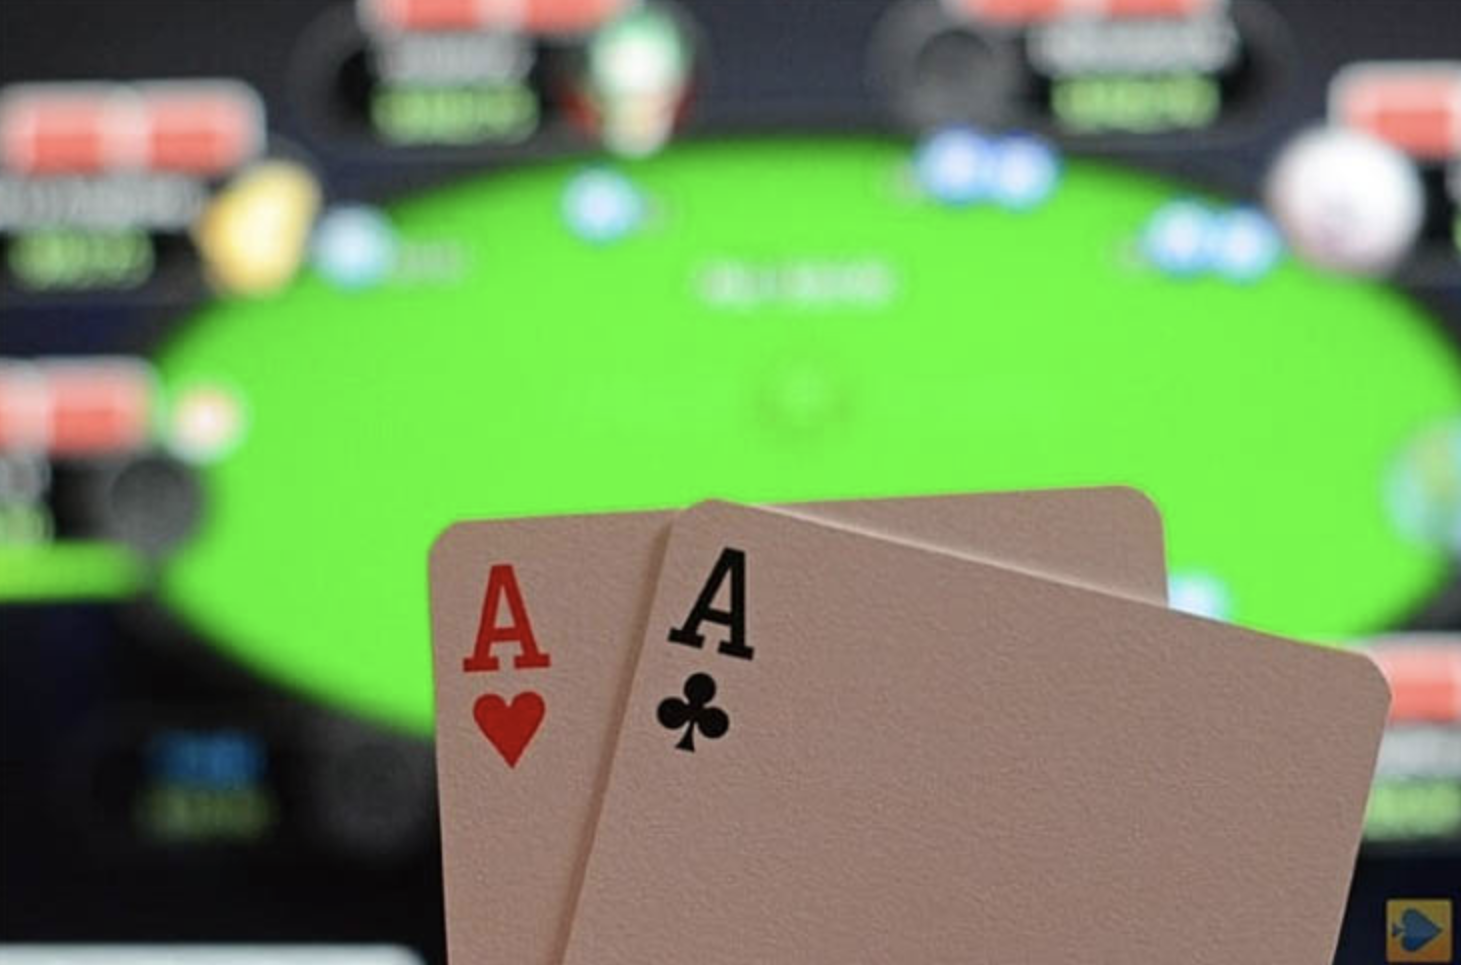 Покер играть онлайн на виртуальные деньги игры майнкрафт играть бесплатно прохождение карт